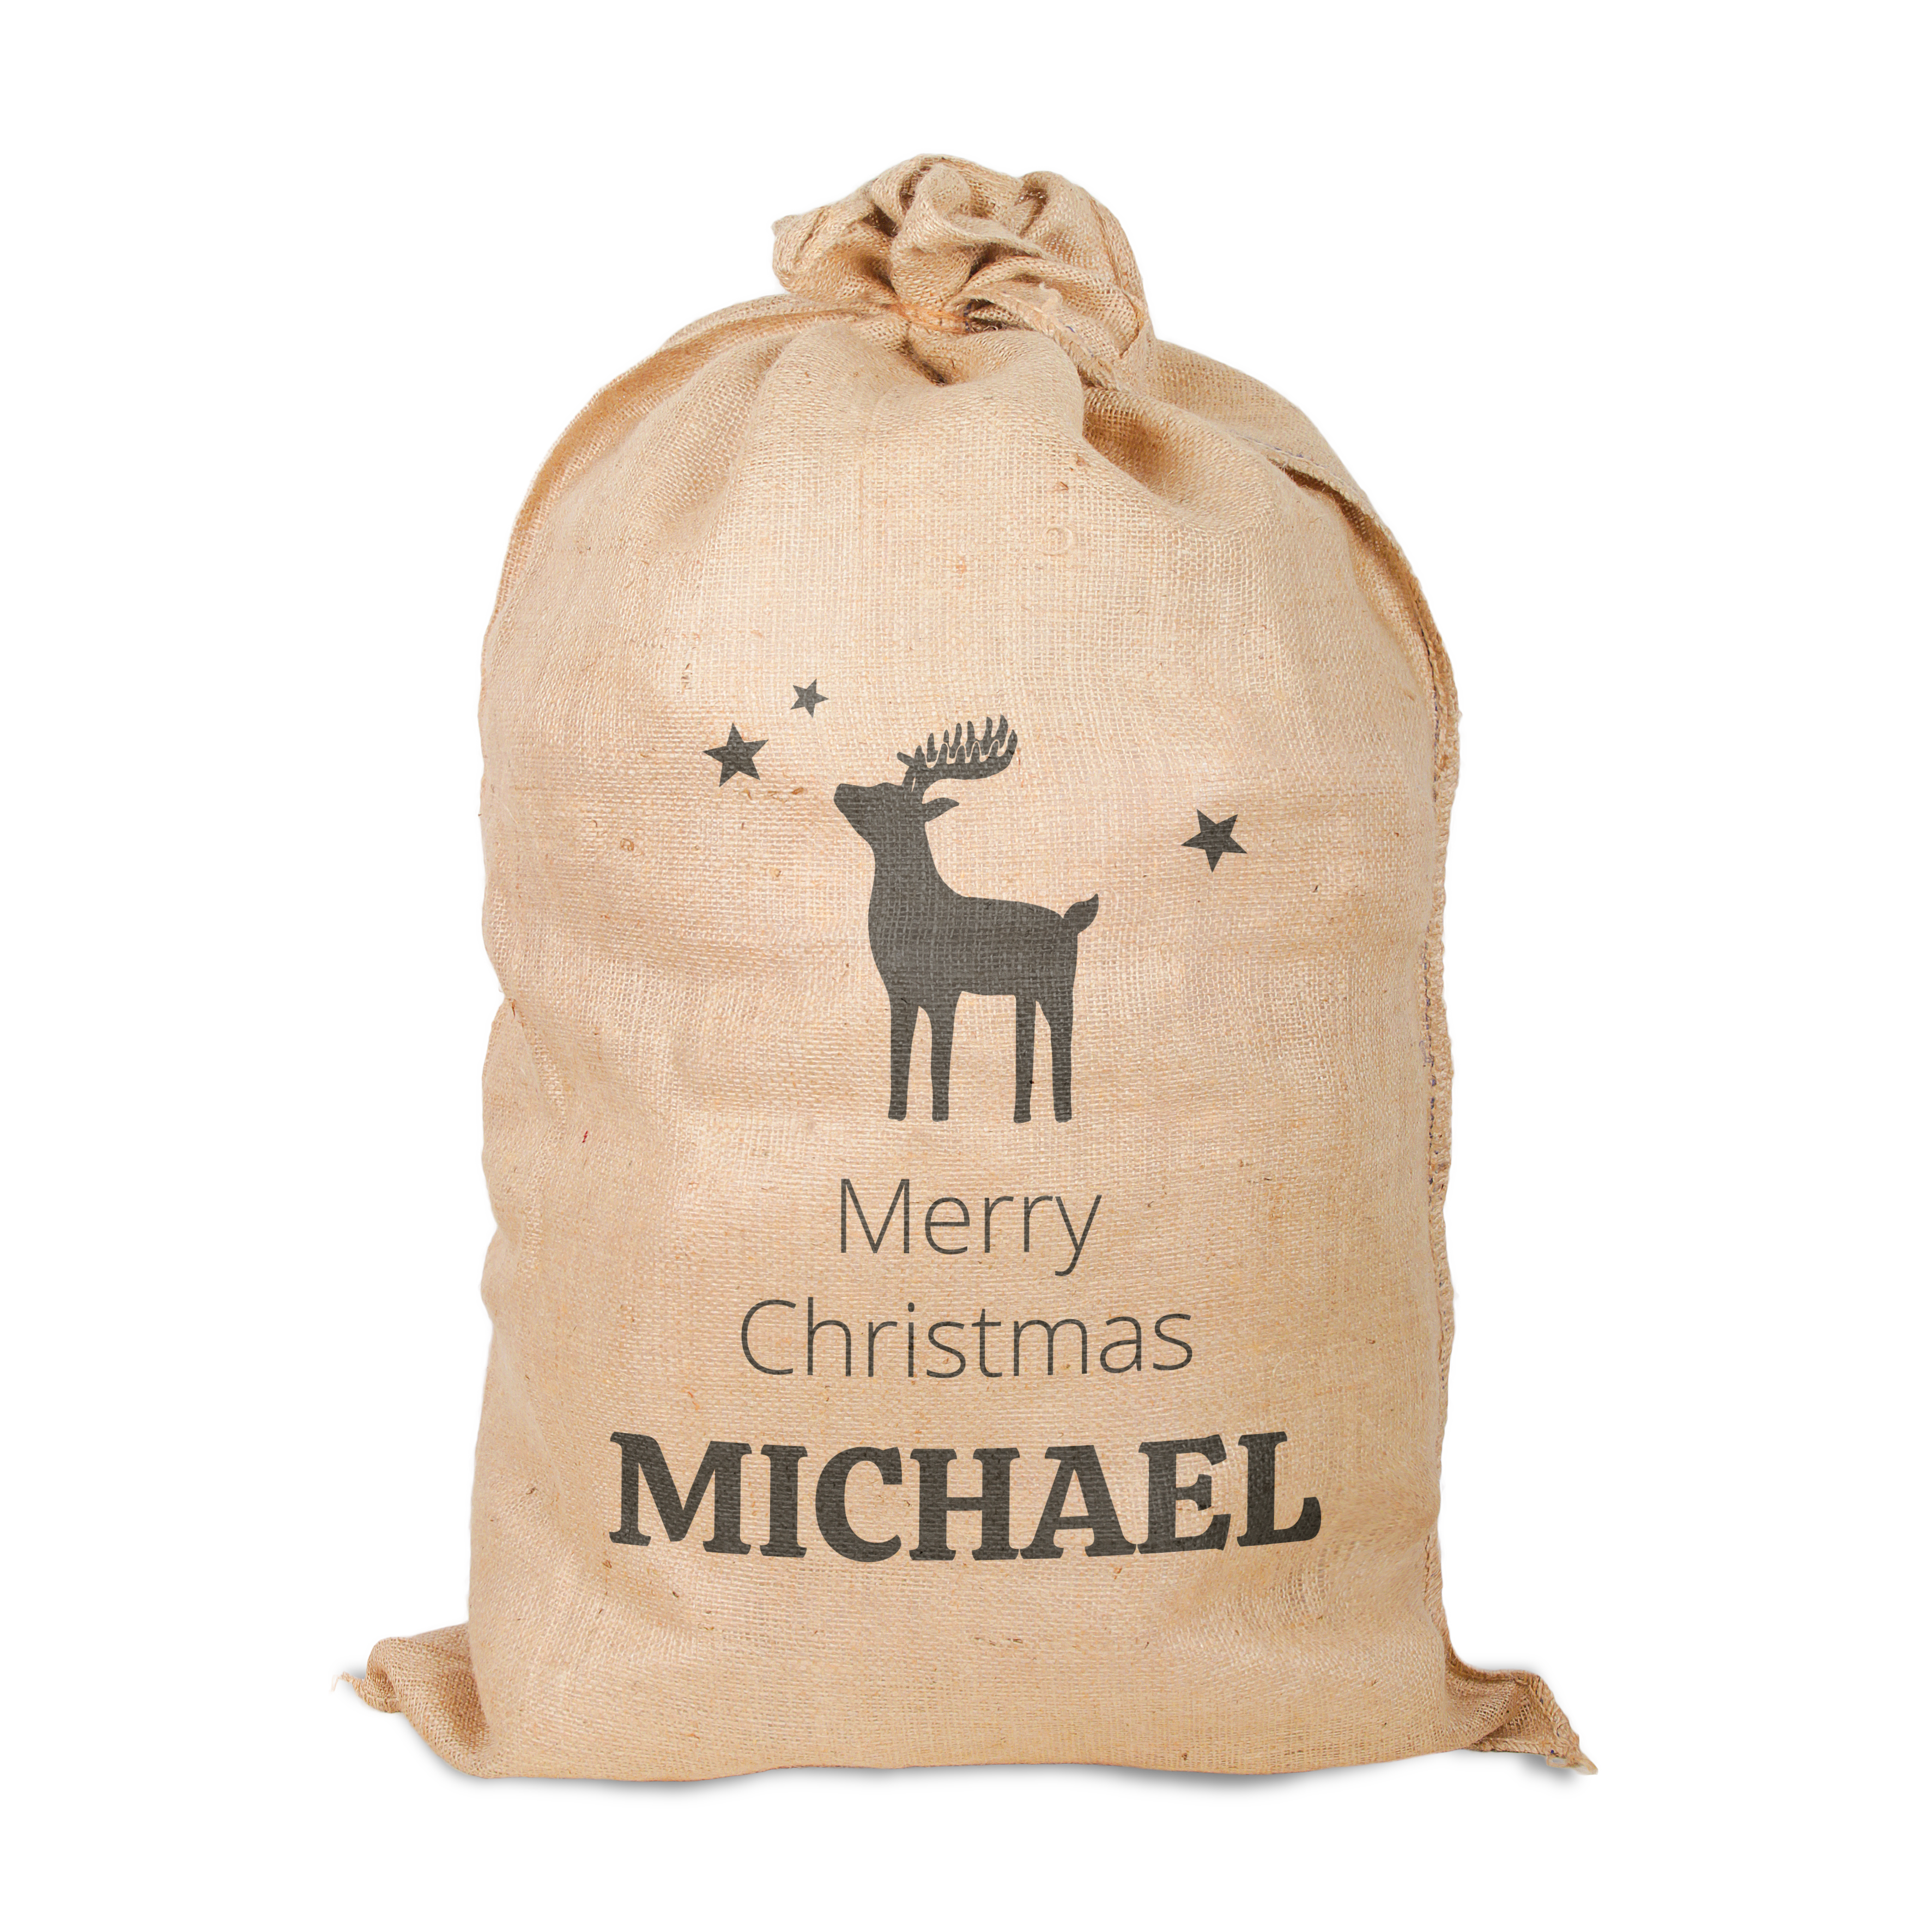 Christmas sacks